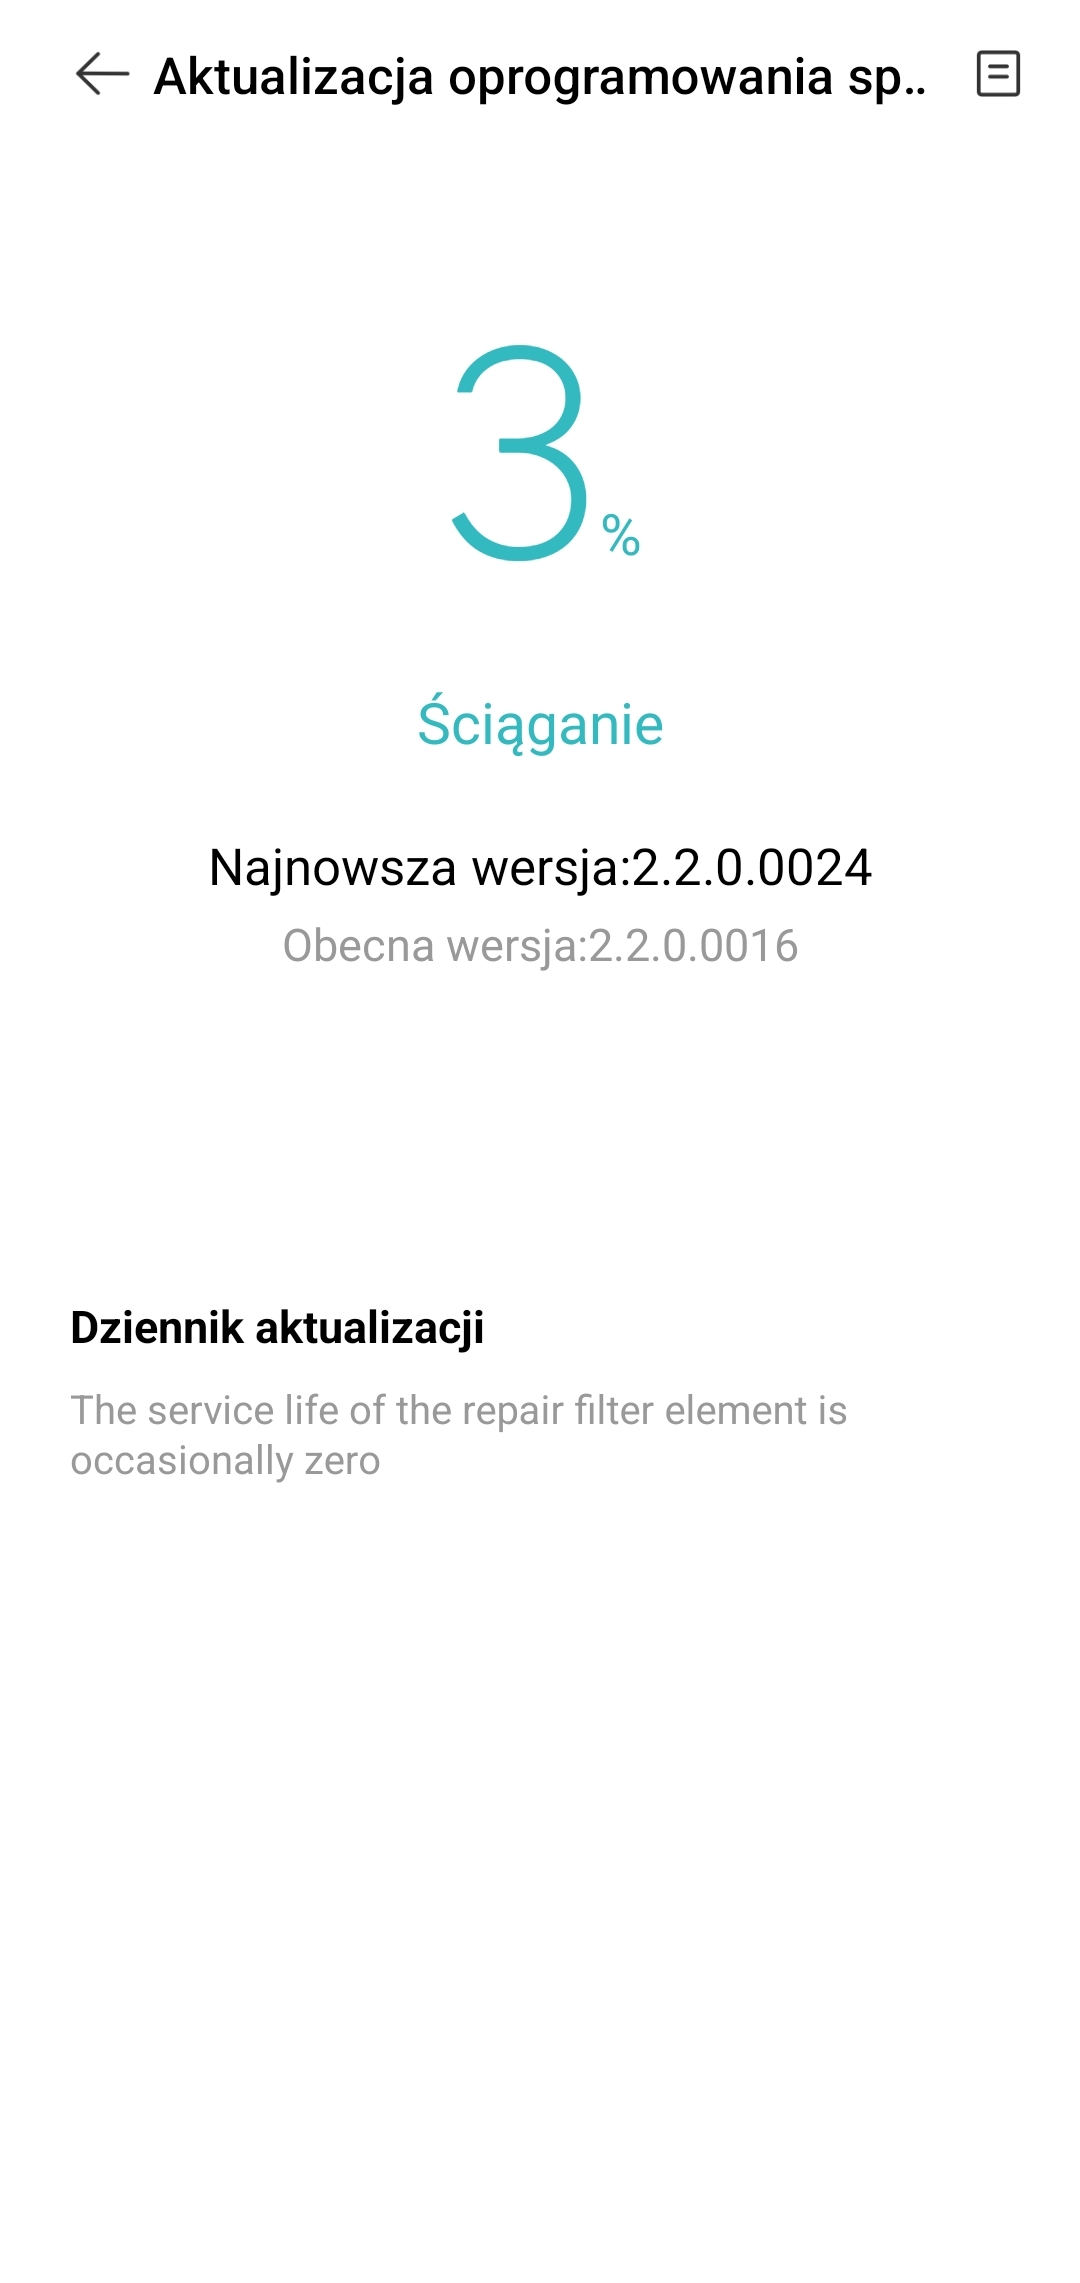 Recenzja Xiaomi Smart Air Purifier 4 Pro. Skuteczny oczyszczacz powietrza, ale dość drogi